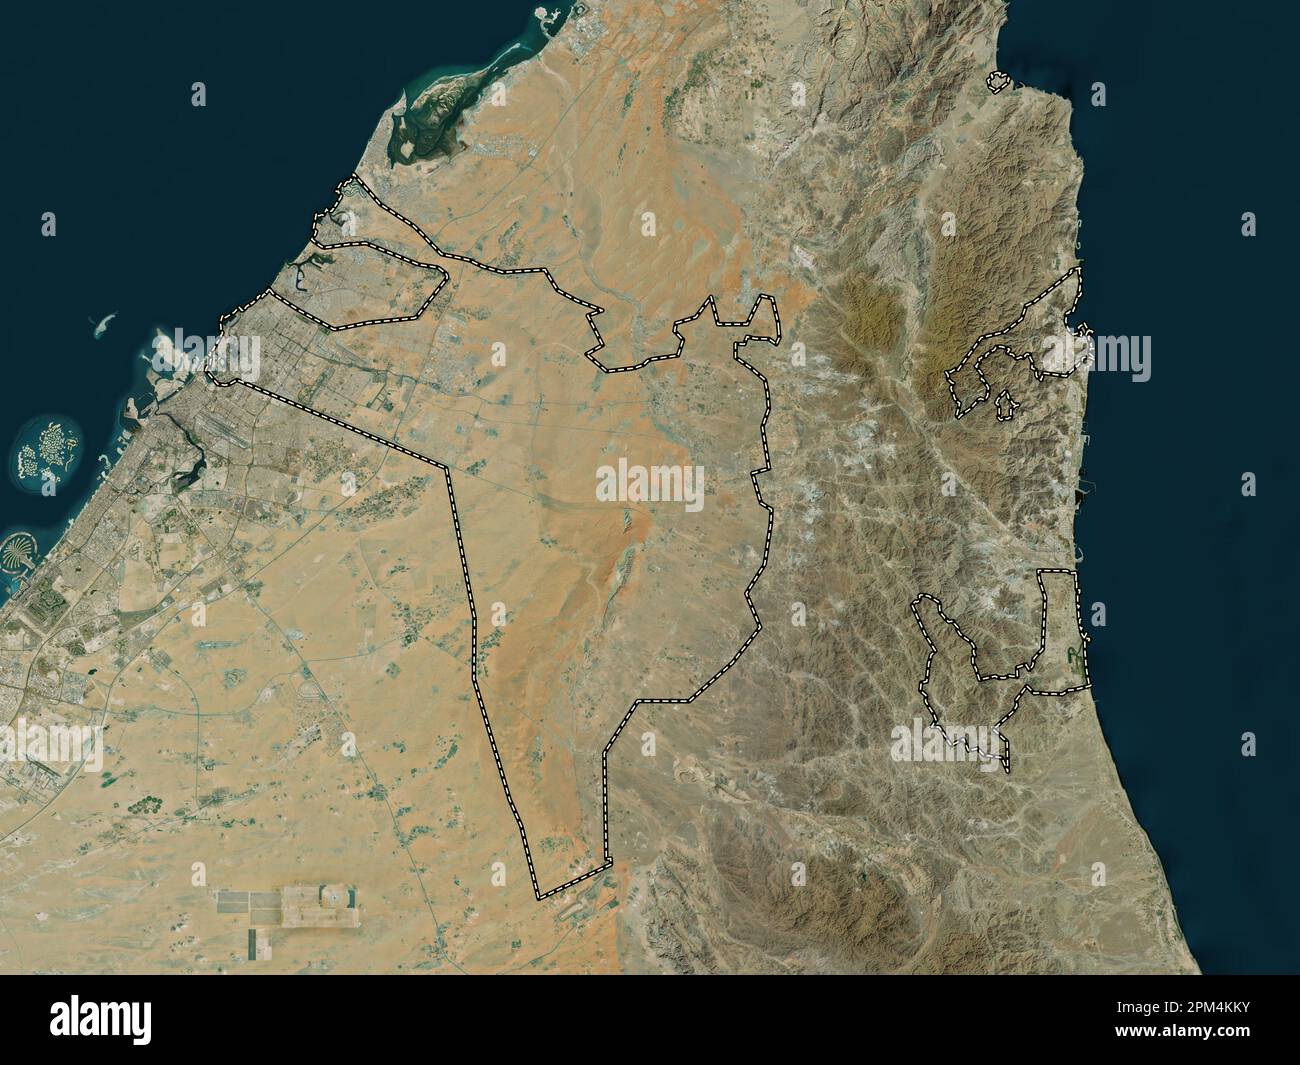 Sharjah, emirato degli Emirati Arabi Uniti. Mappa satellitare ad alta risoluzione Foto Stock